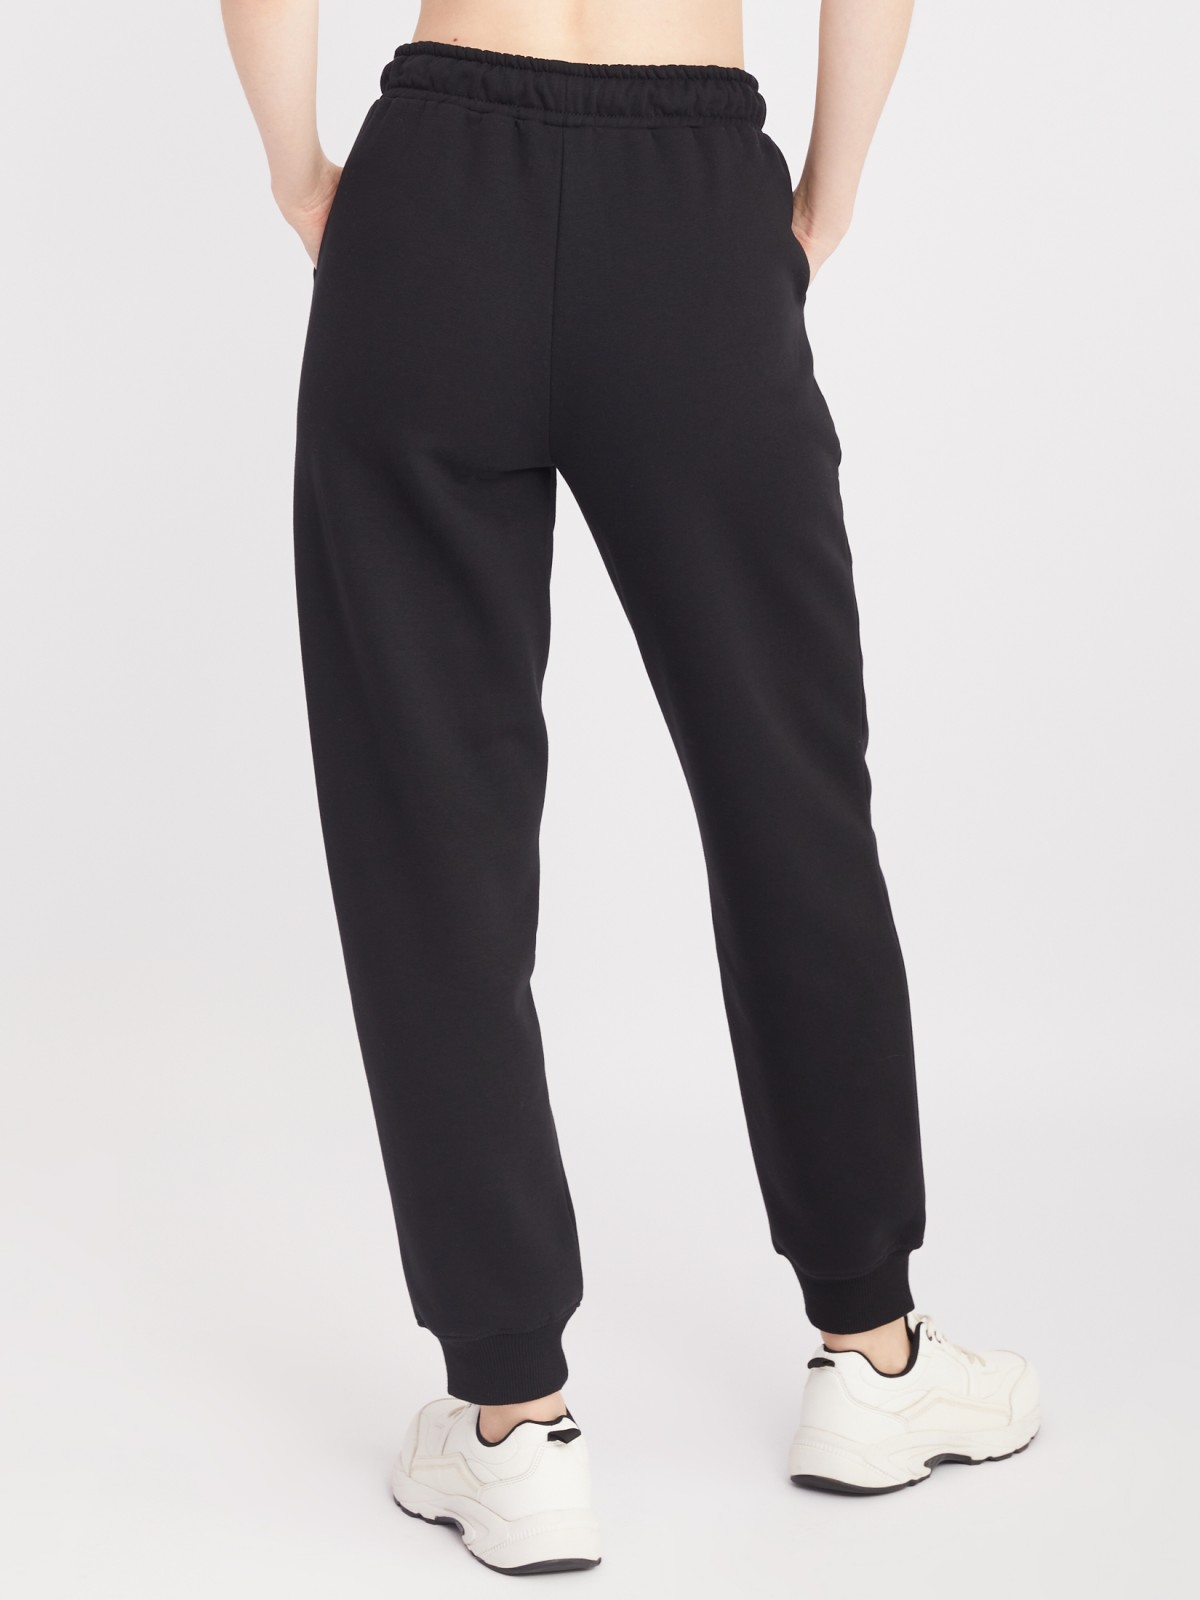 Утеплённые трикотажные брюки-джоггеры с поясом на резинке zolla 22332761Y062, цвет черный, размер XS - фото 6